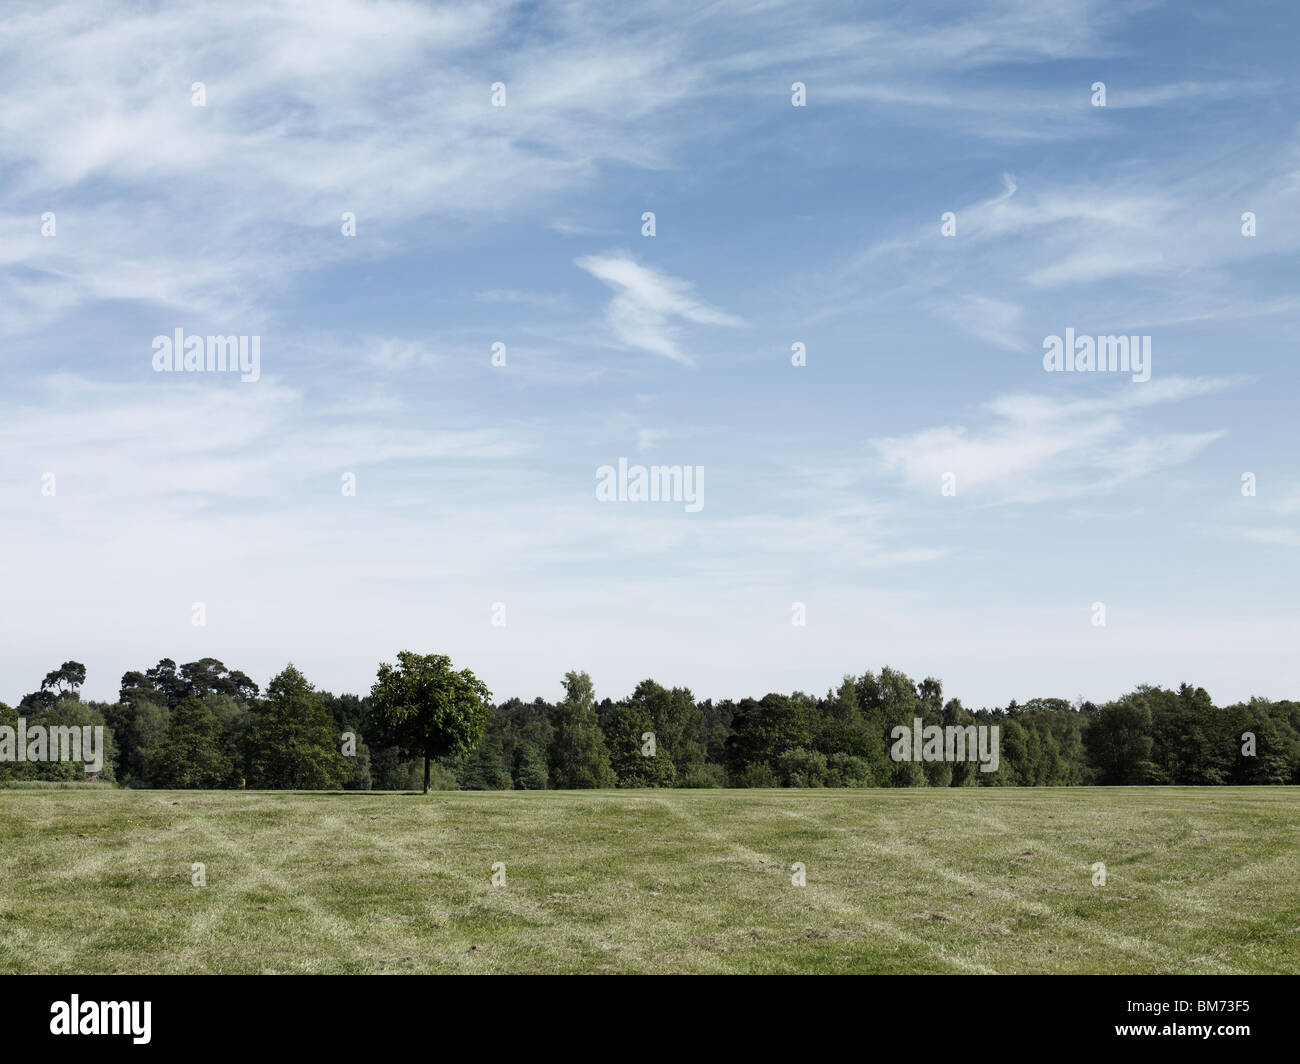 Image paysage d'un parking dans un champ, montrant les traces de pneu sur l'herbe, des arbres et un ciel d'un jour ensoleillé Banque D'Images